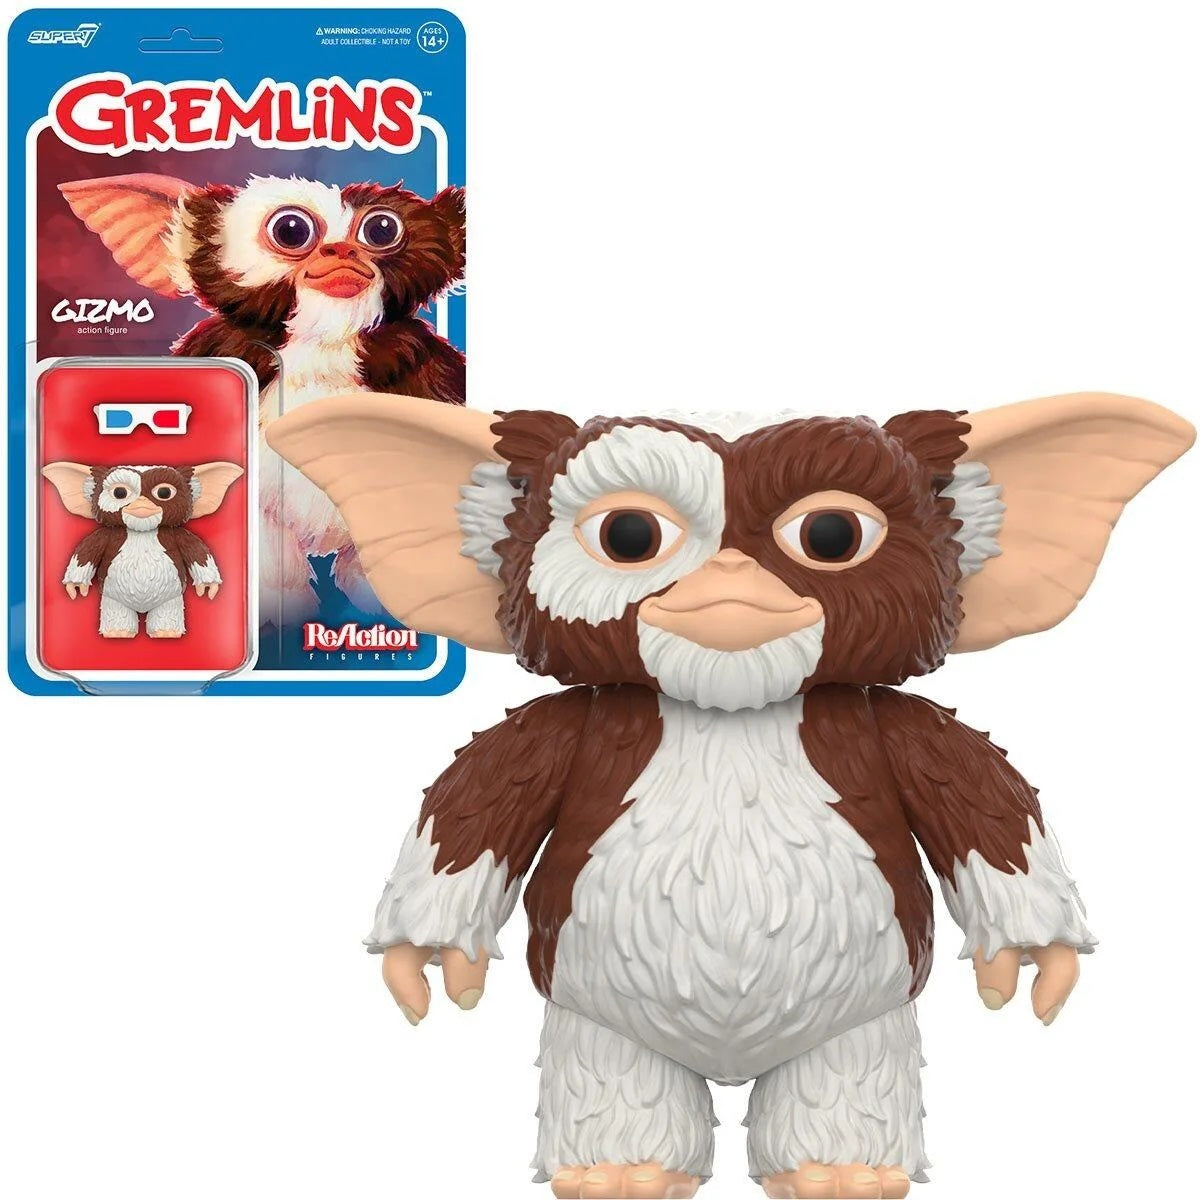 GREMLINS - Gizmo ReAction Figure